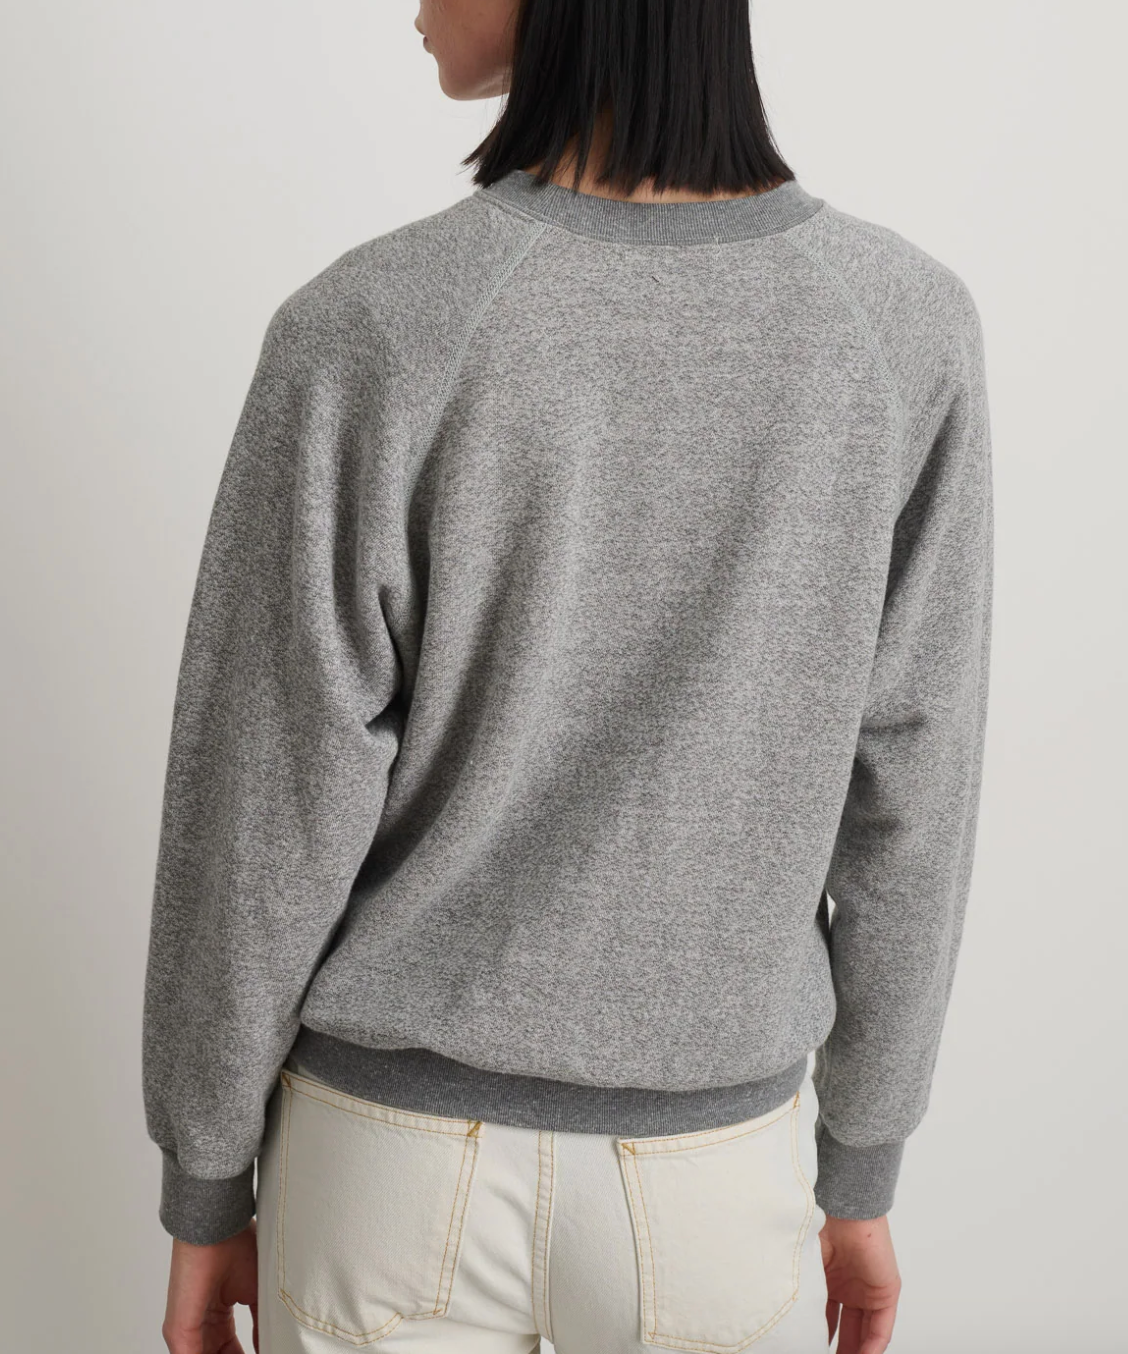 Product Image for Sweatshirt, Grey Heather